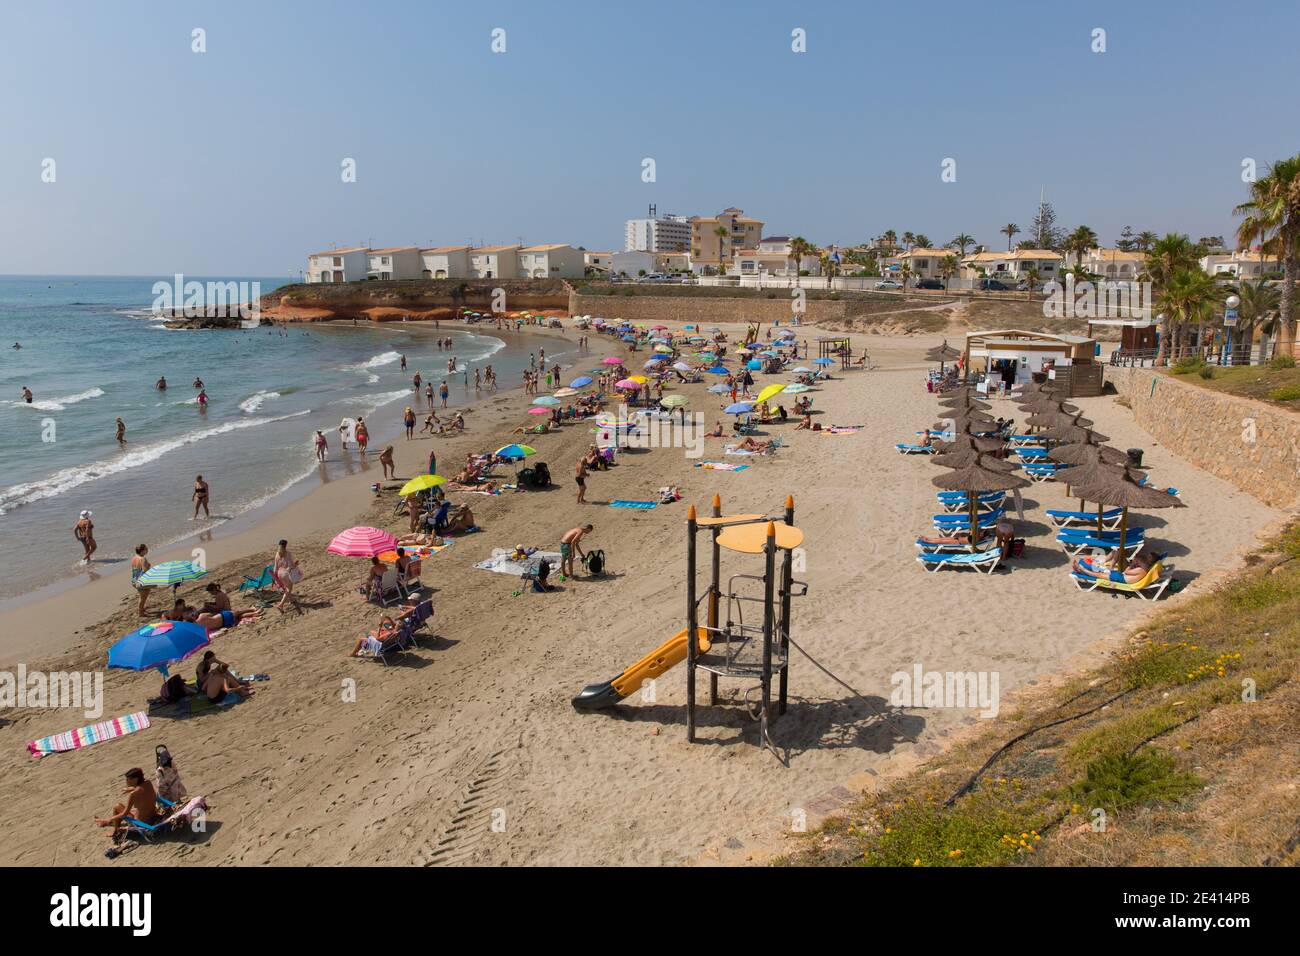 Playa Flamenca Spagna spiaggia con persone sotto il sole estivo Foto Stock